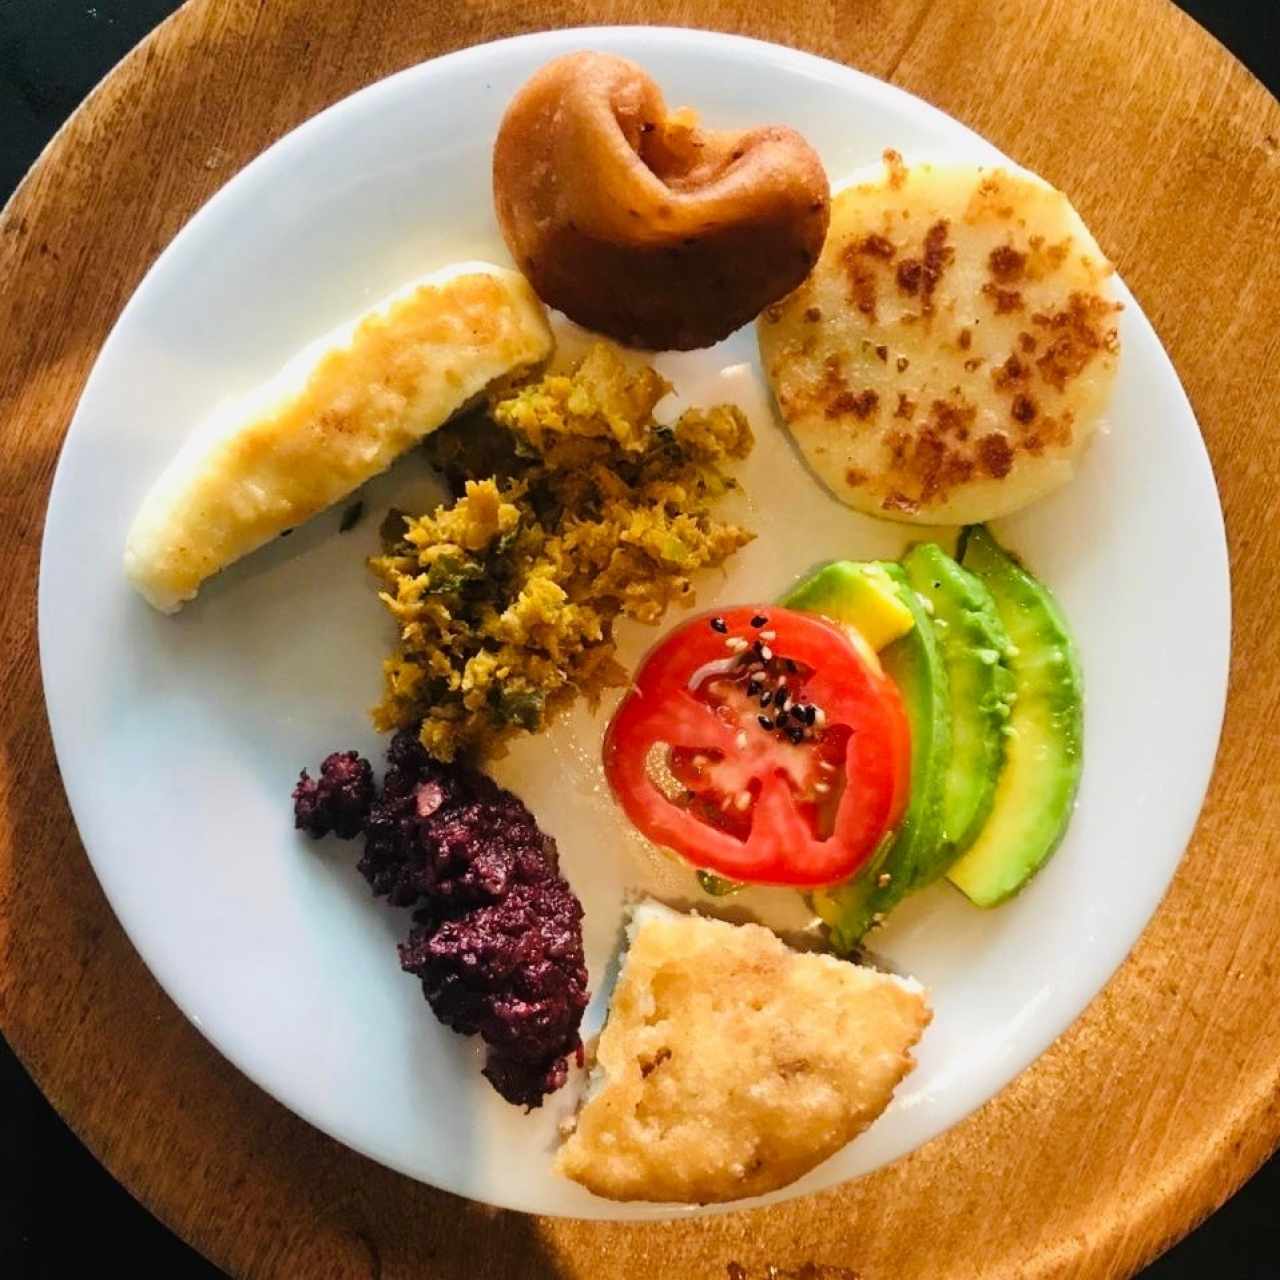 Desayuno criollo a lo venezolano 